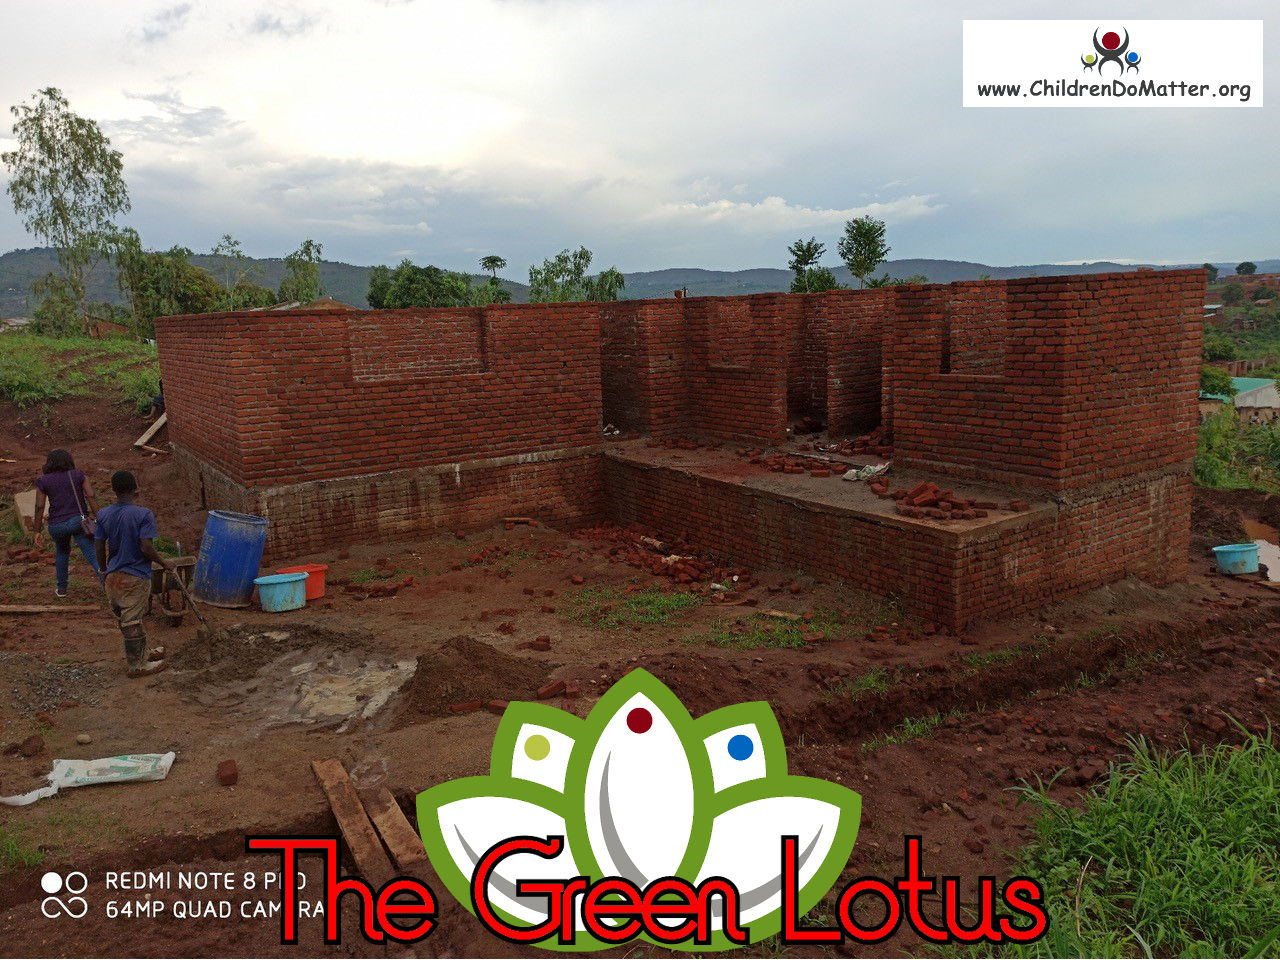 costruzione dell'orfanotrofio casa di accoglienza the green lotus a blantyre malawi - children do matter - 13